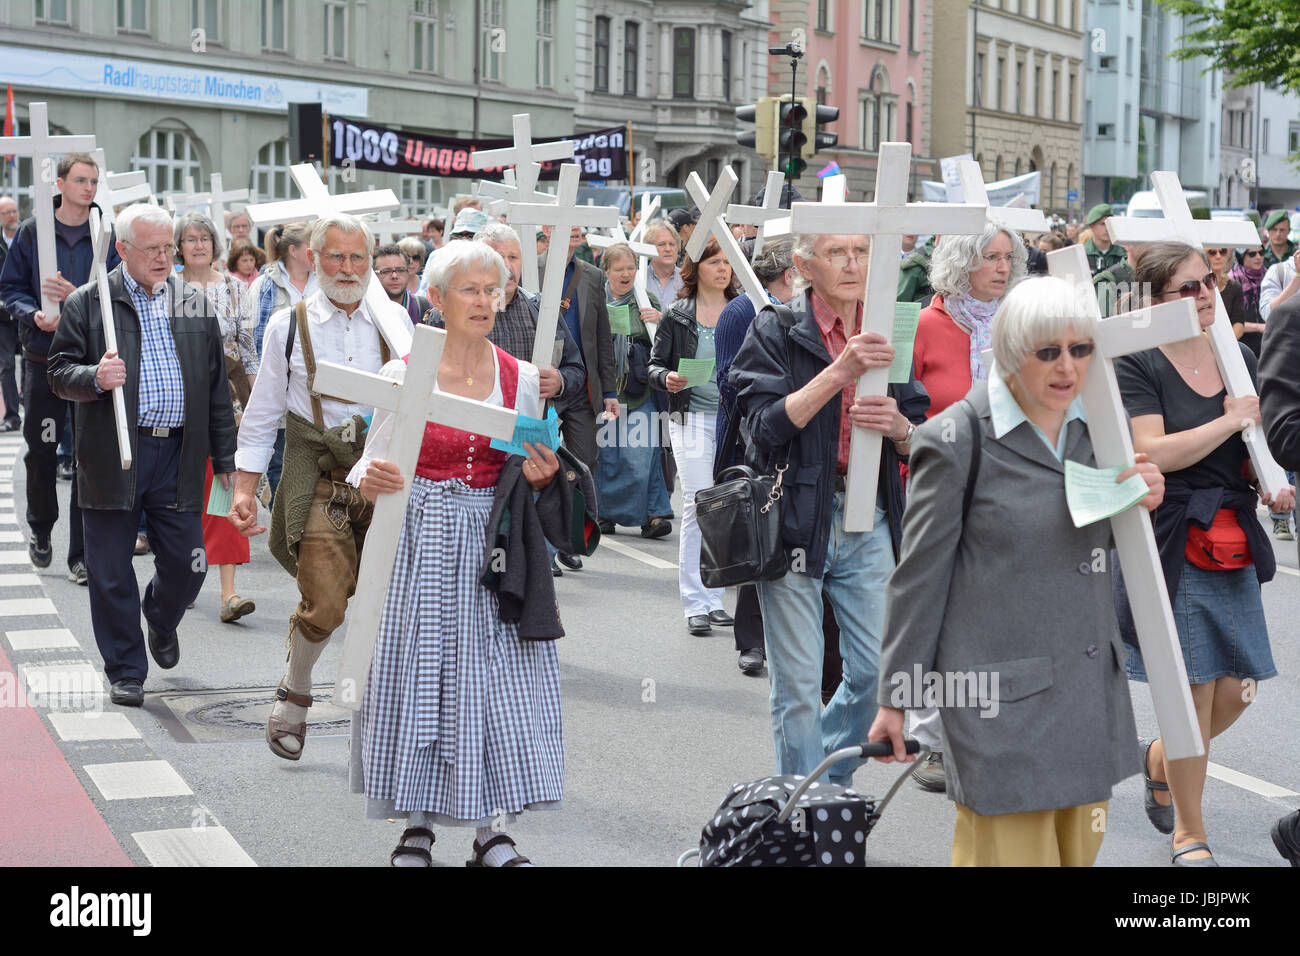 Monaco di Baviera, Germania - 10 Maggio 2014: Anti-Abortion dimostrazione con i partecipanti che trasportano croci cristiane e banner. Centinaia hanno protestato pacificamente a Monaco di Baviera. Foto Stock